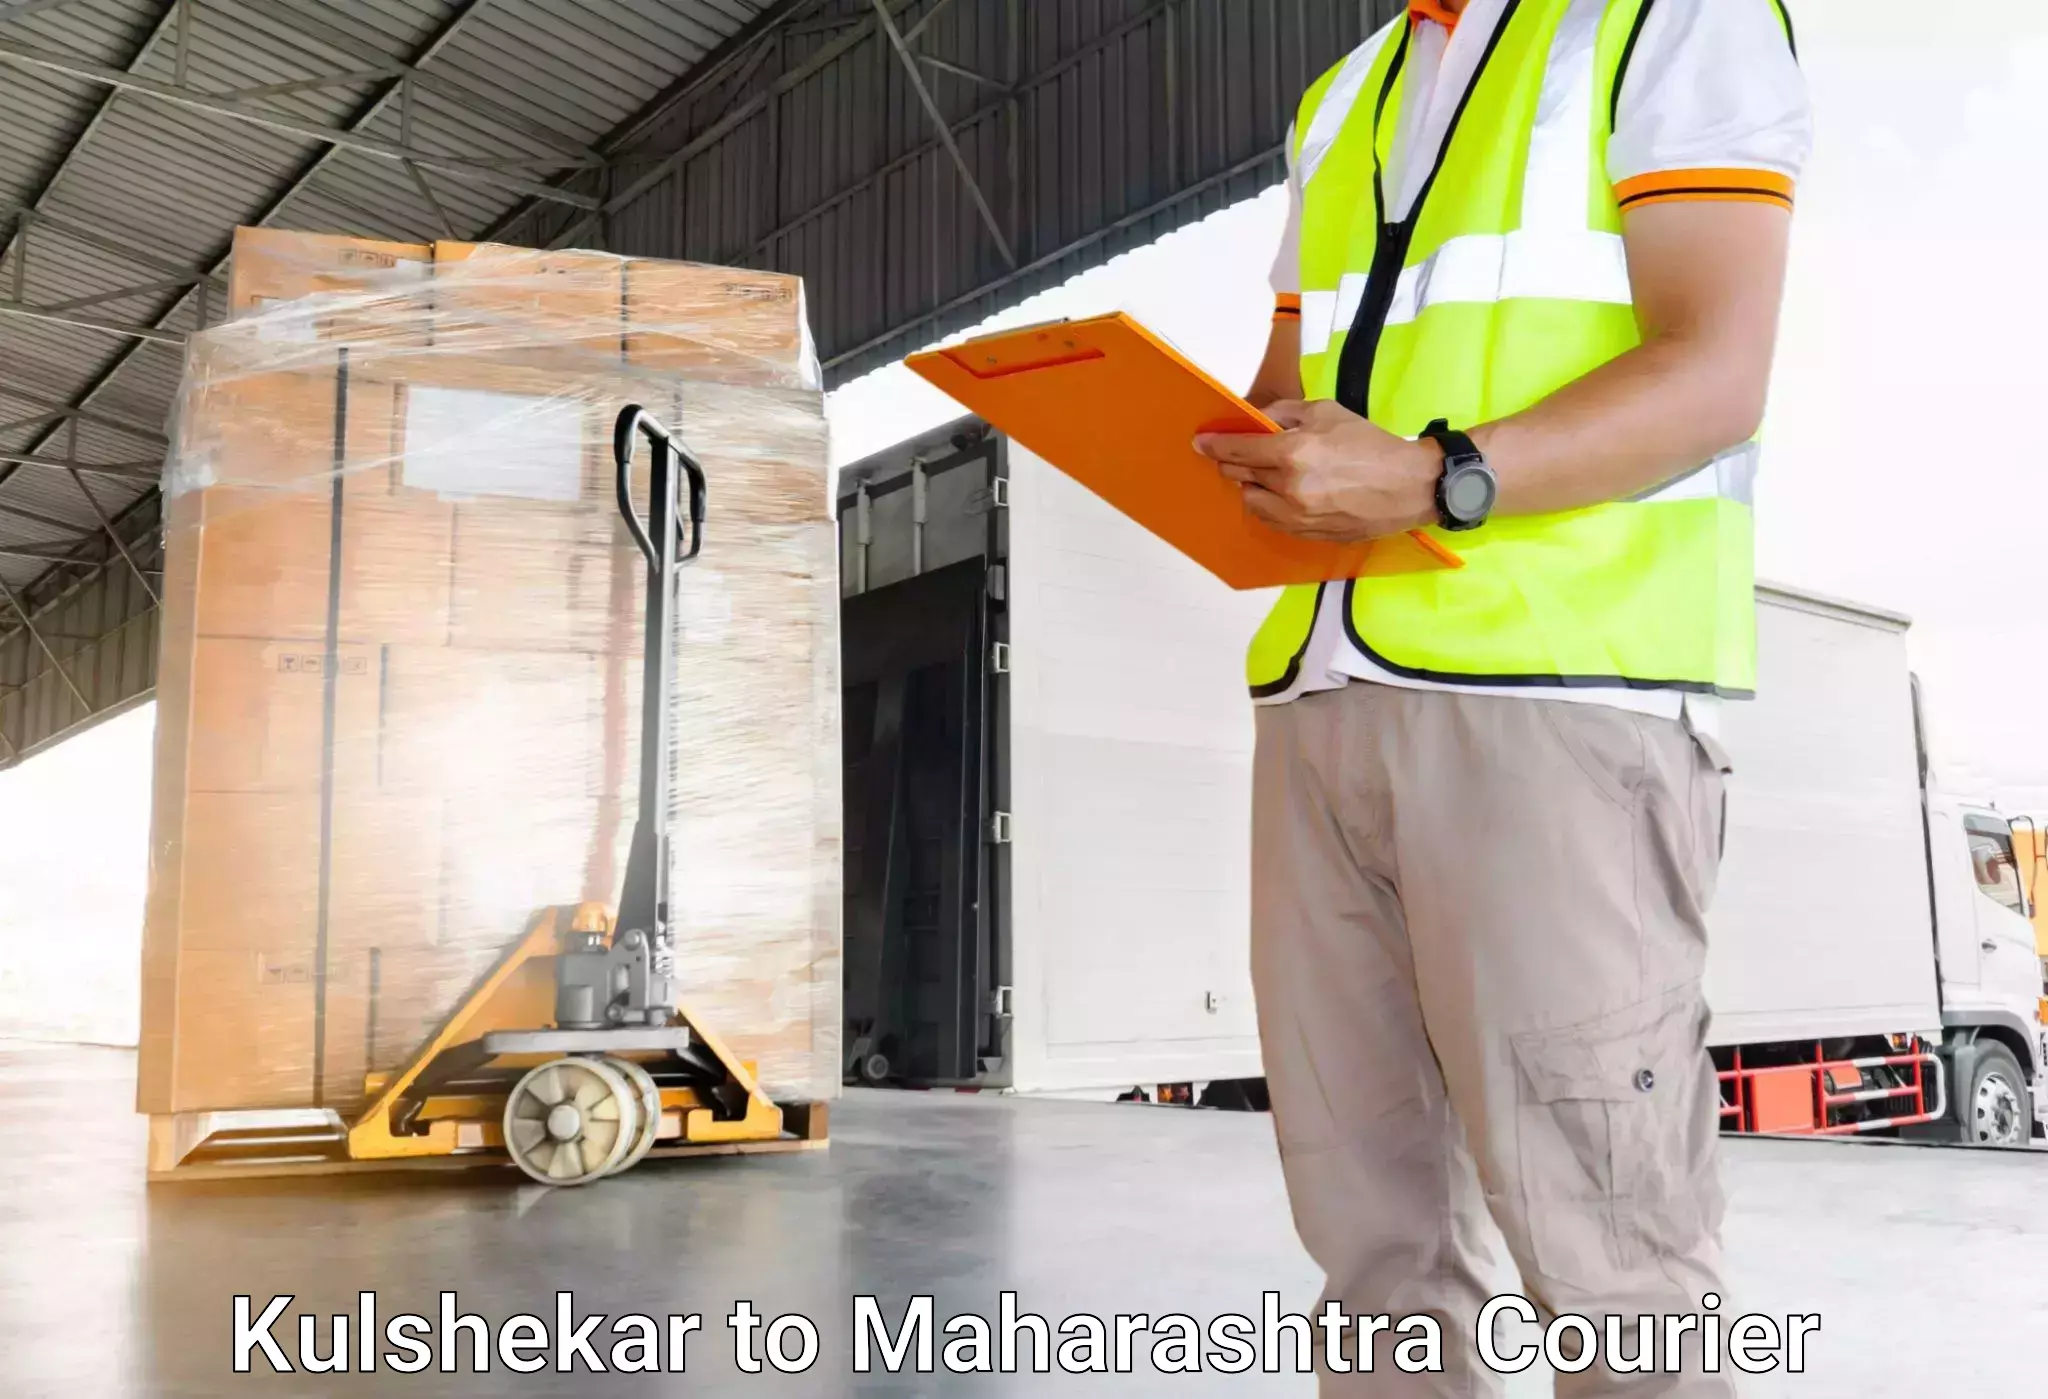 Luggage shipment tracking Kulshekar to Wardha